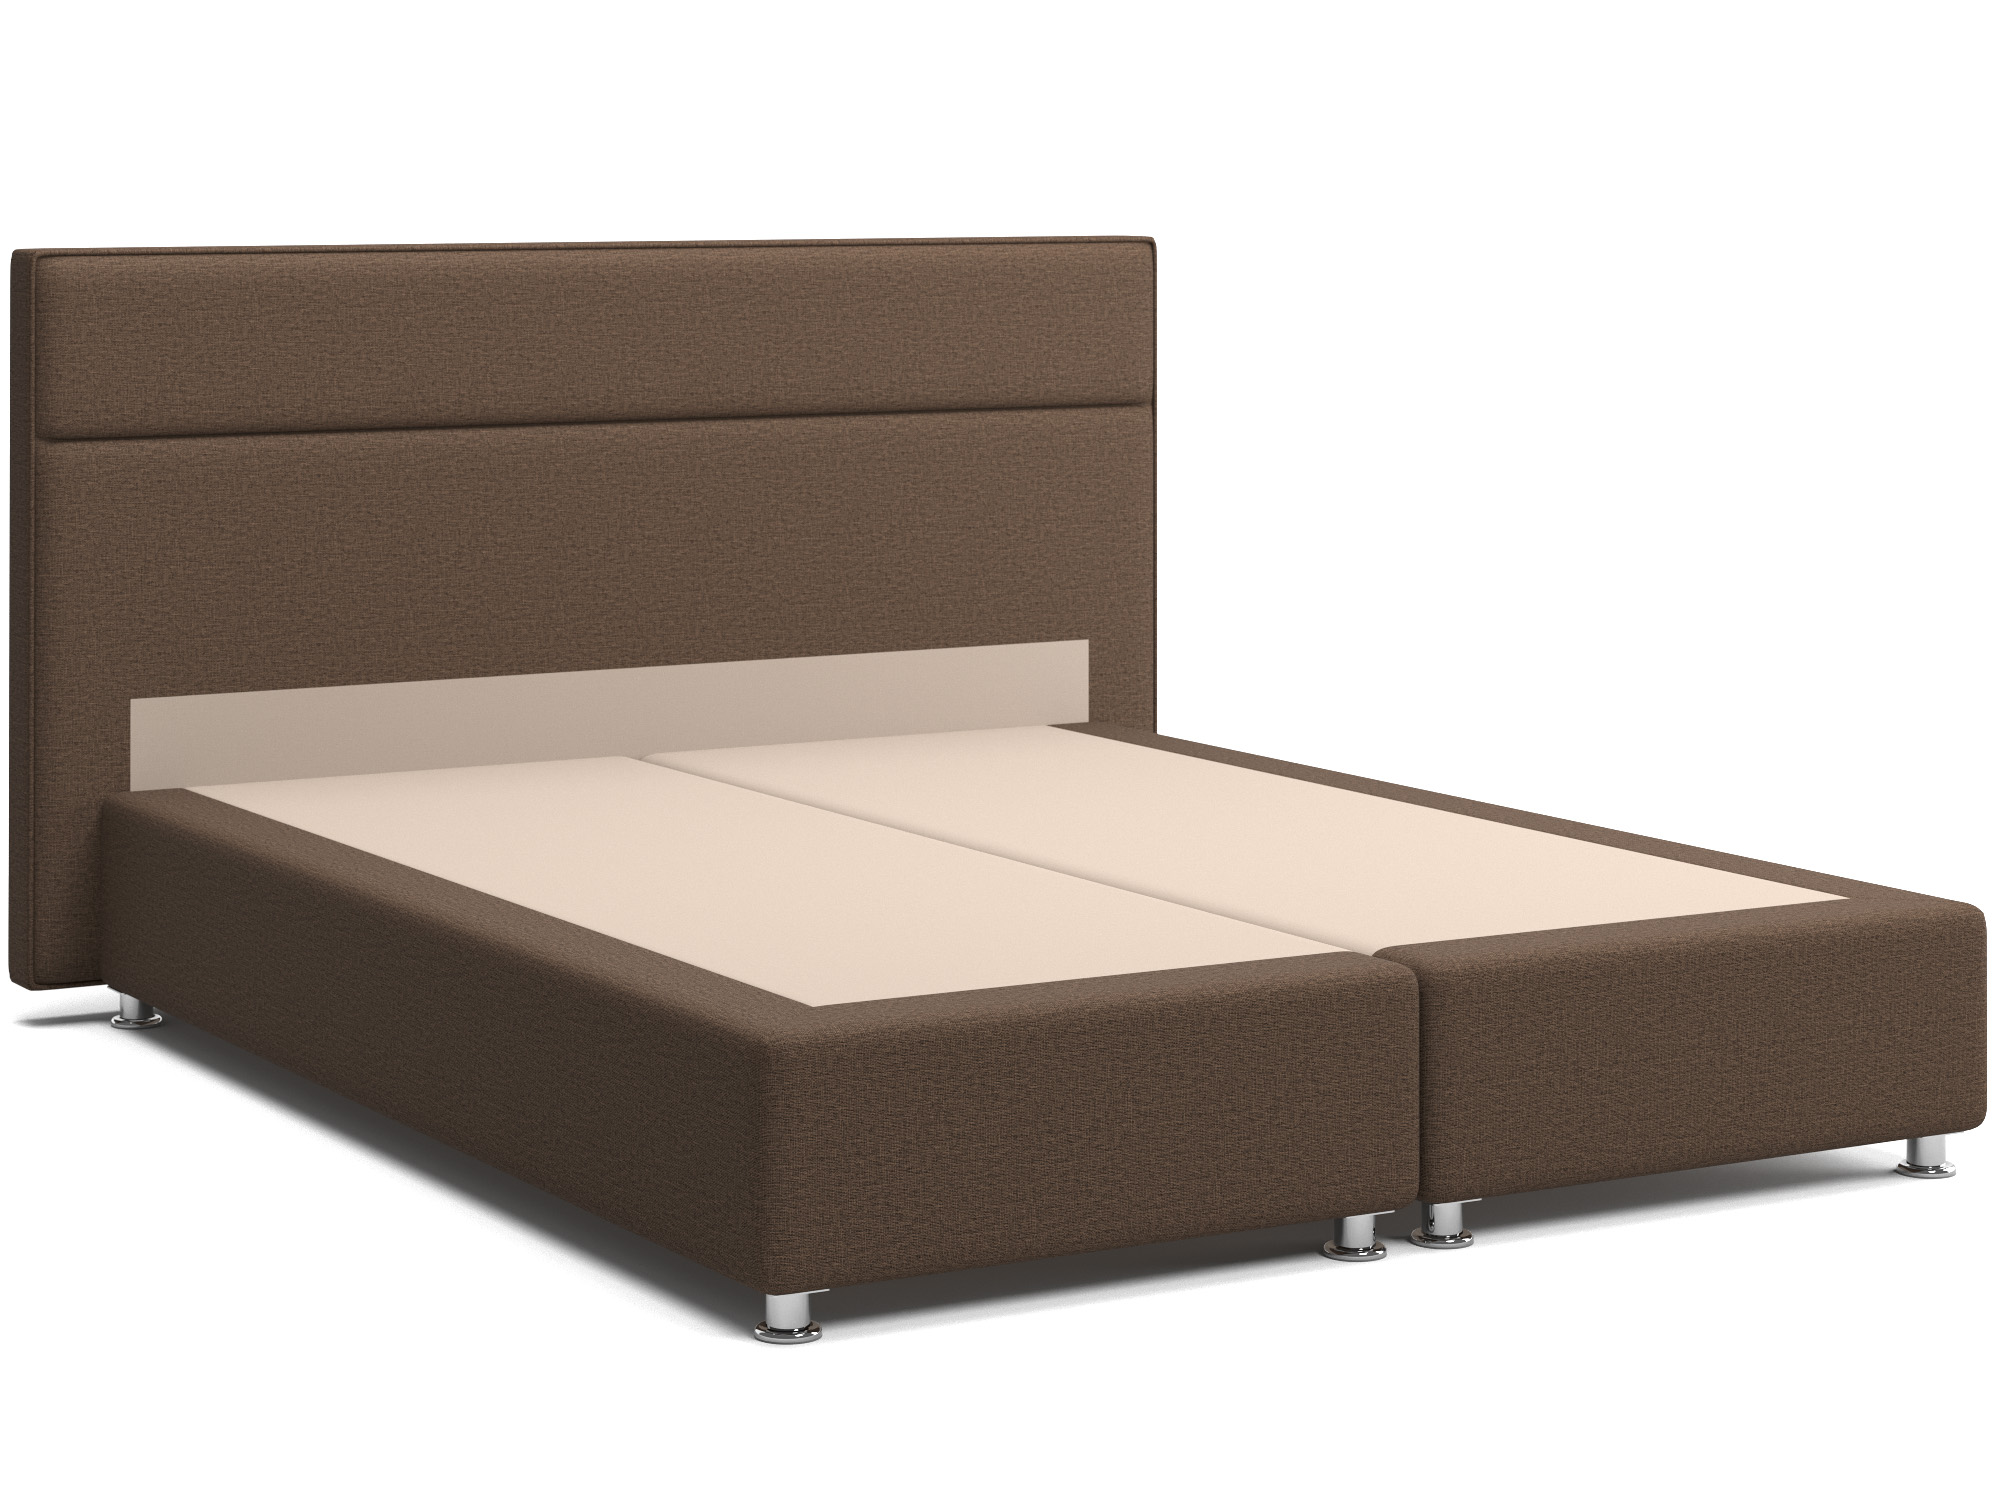 Интерьерная кровать Марта (160х200) Коричневый, Массив, ДСП интерьерная кровать марта 160х200 коричневый массив дсп